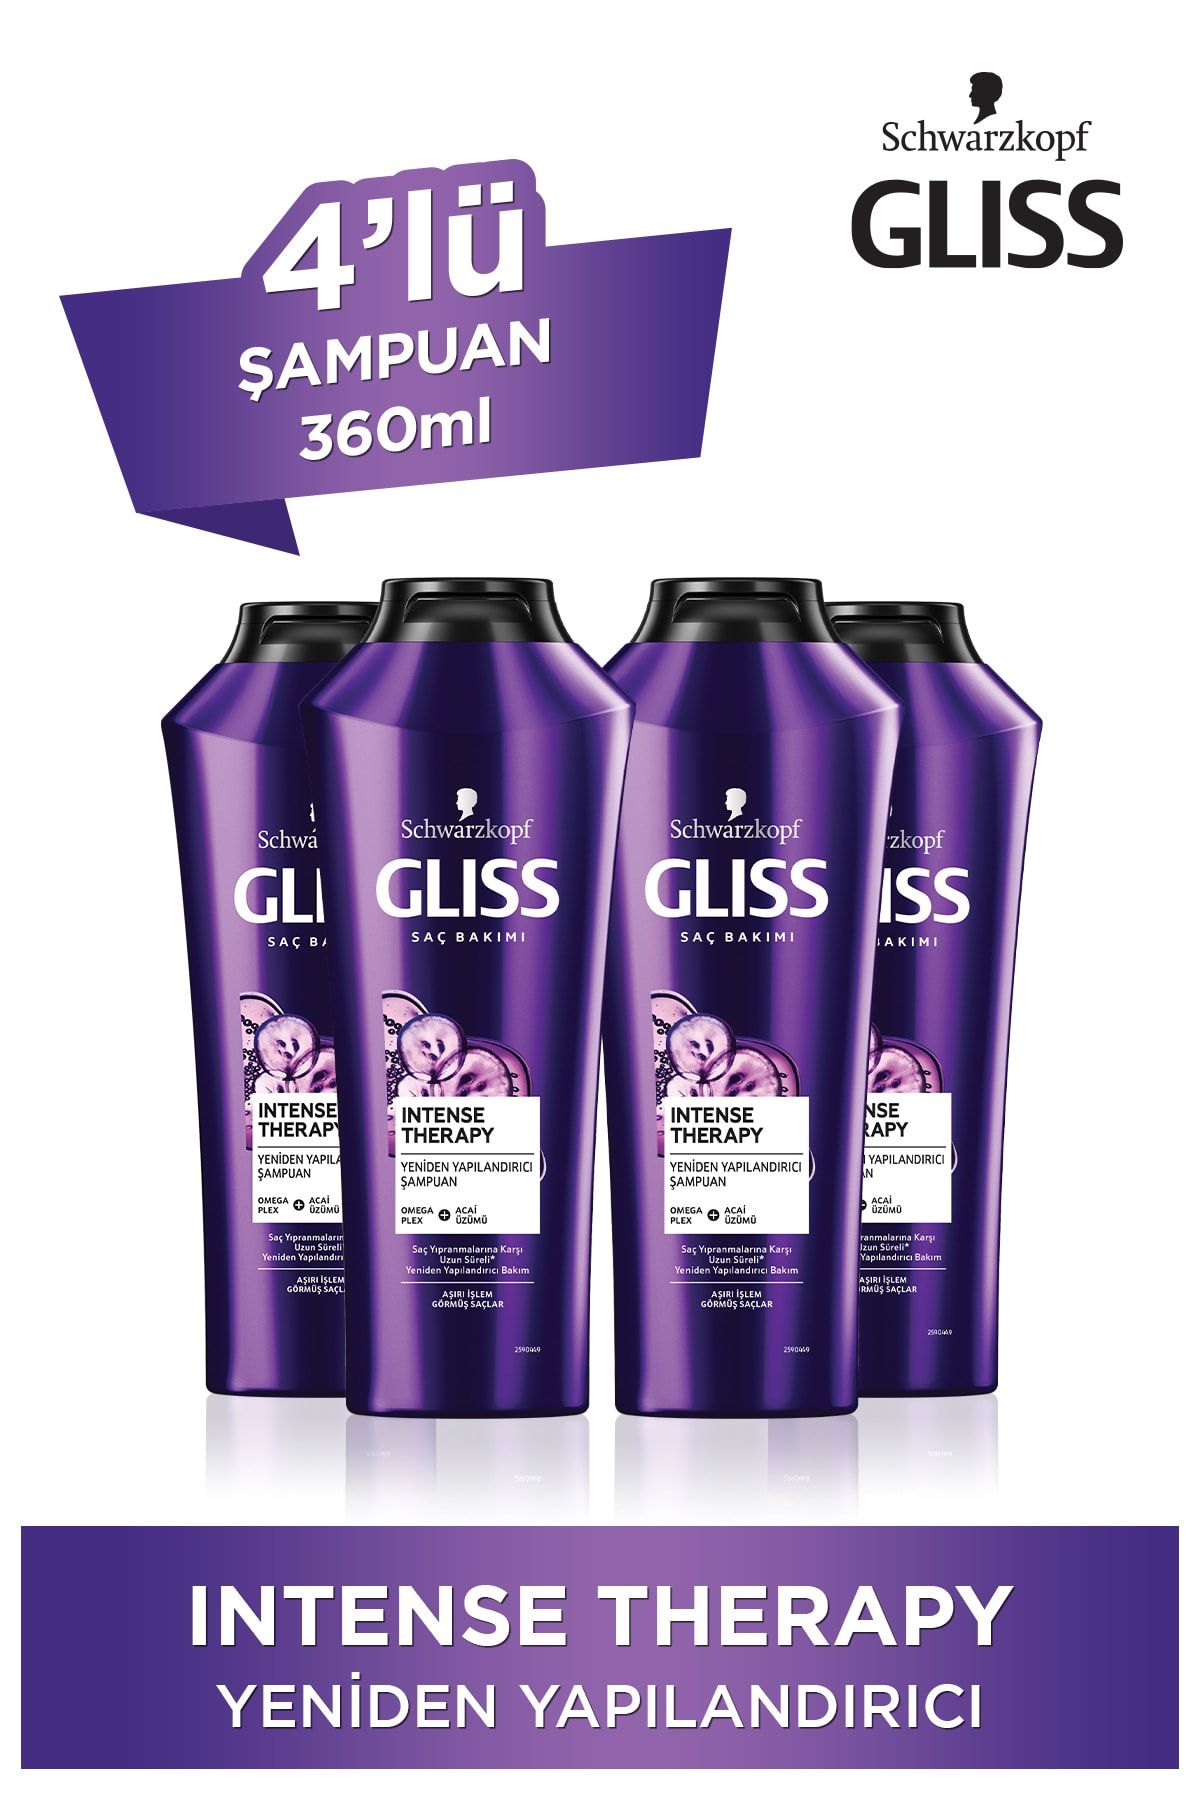 Gliss Intense Therapy Yeniden Yapılandırıcı Şampuan - Omega Plex Ve Acai Üzümü Ile 360 ml X 4 Adet